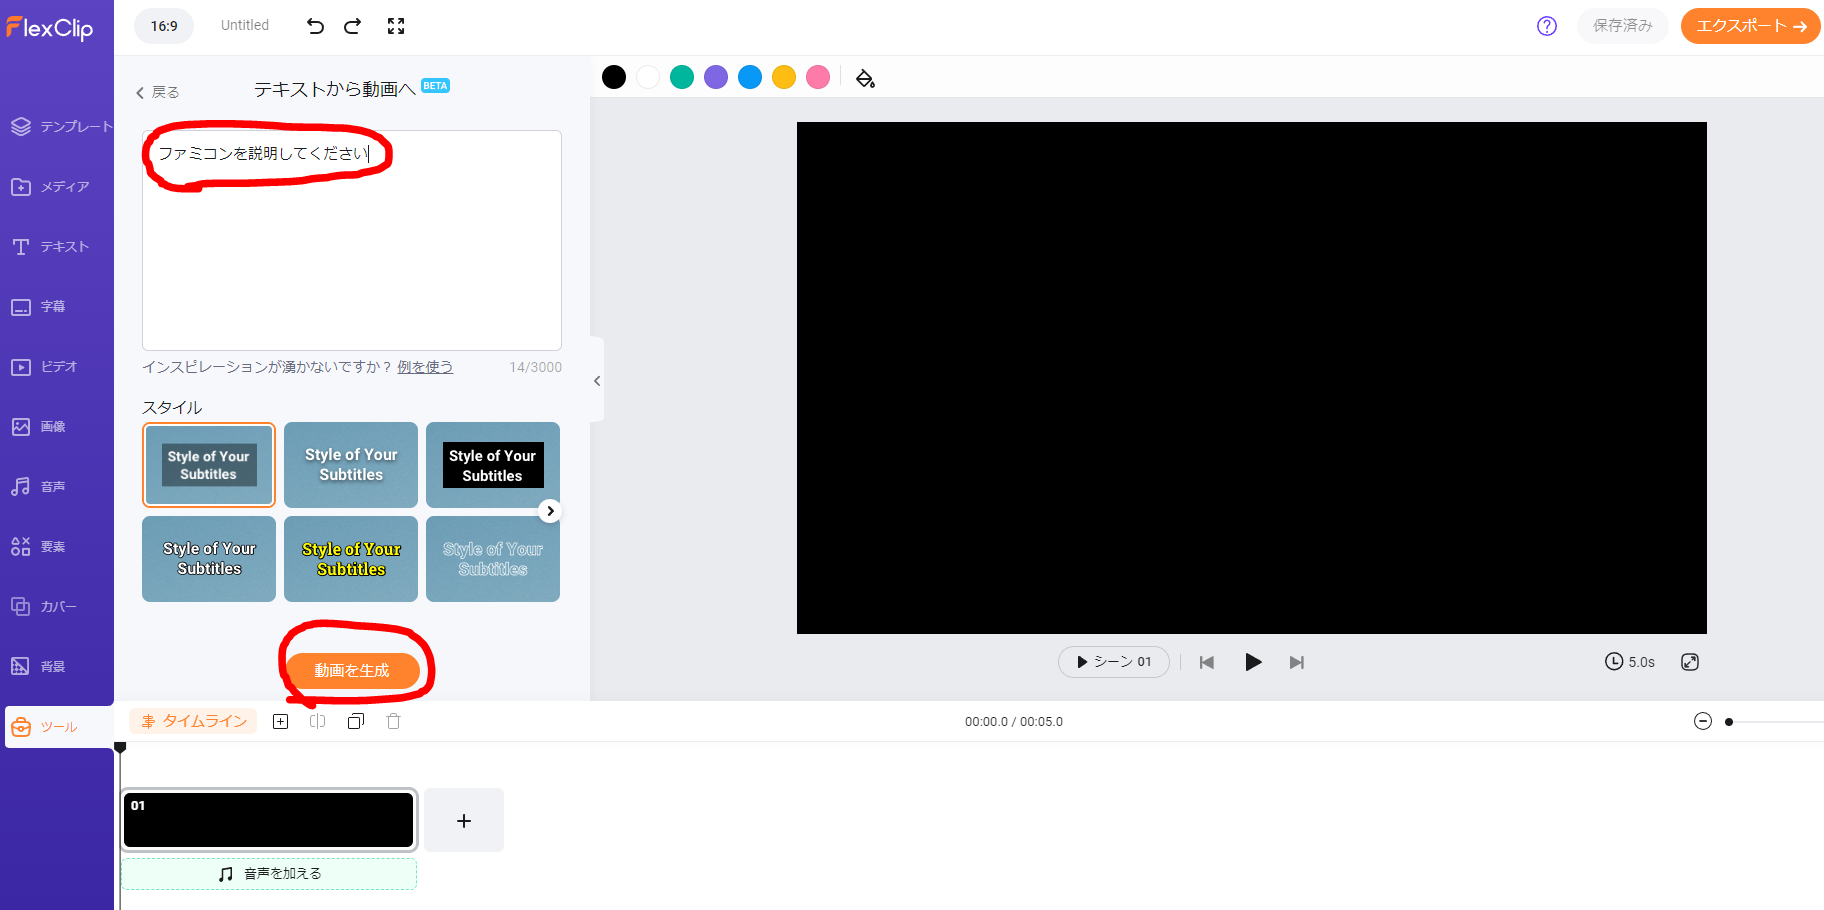 dorublog | AI動画生成 AI動画スクリプト生成Web上で簡単に動画編集のFlexClip レビュー 評価